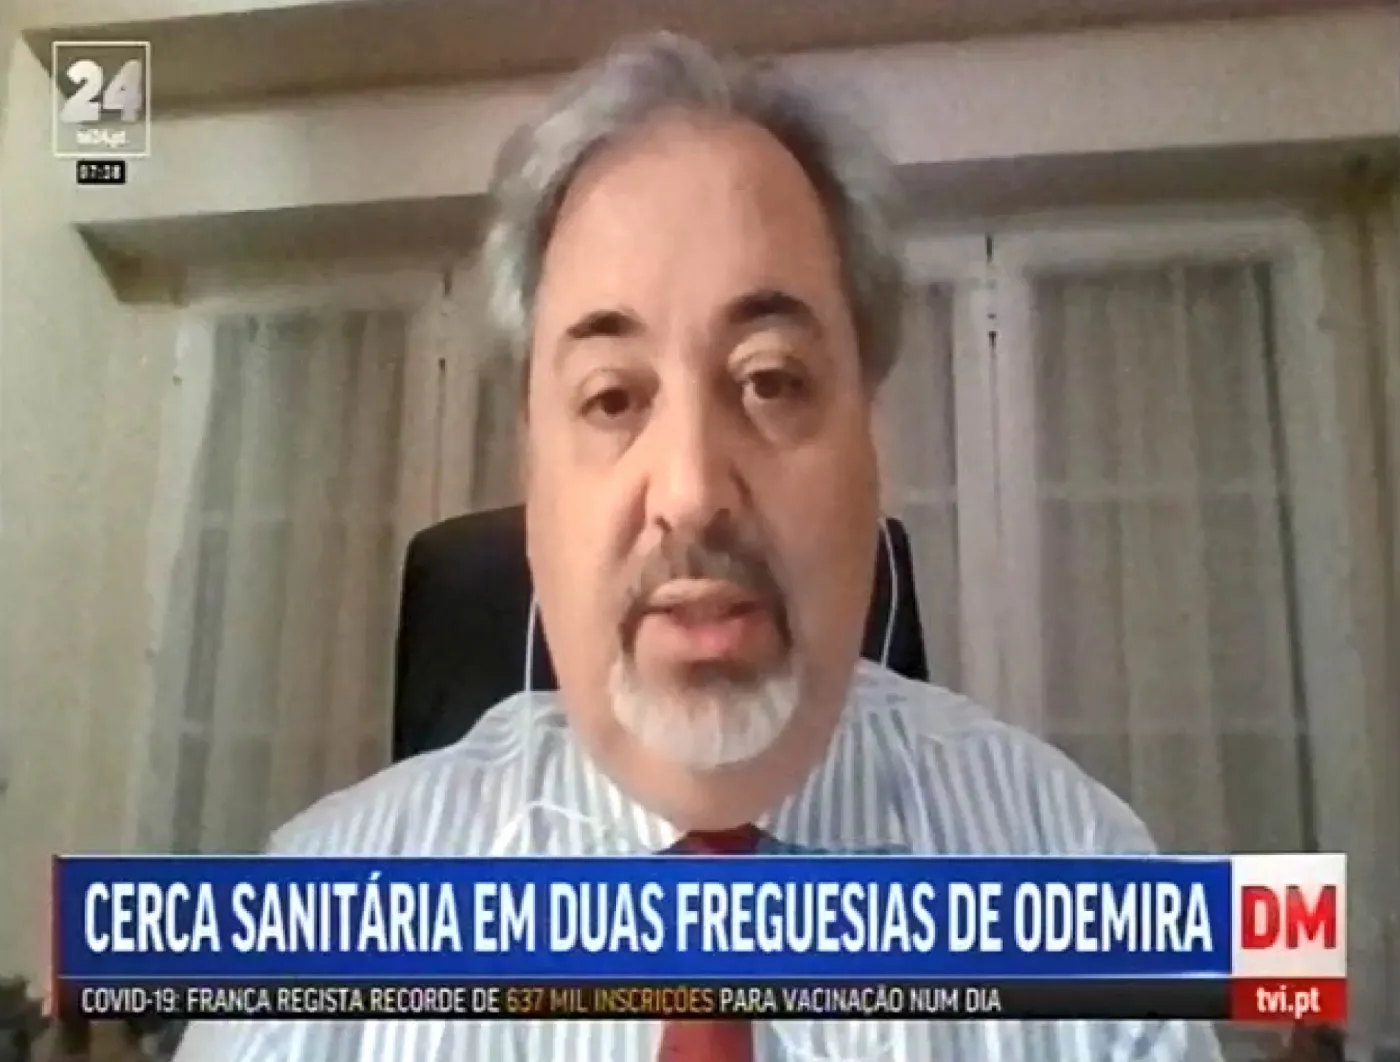 José Luís Moreira da Silva à TVI24 . Cerca sanitária em duas freguesias de Odemira